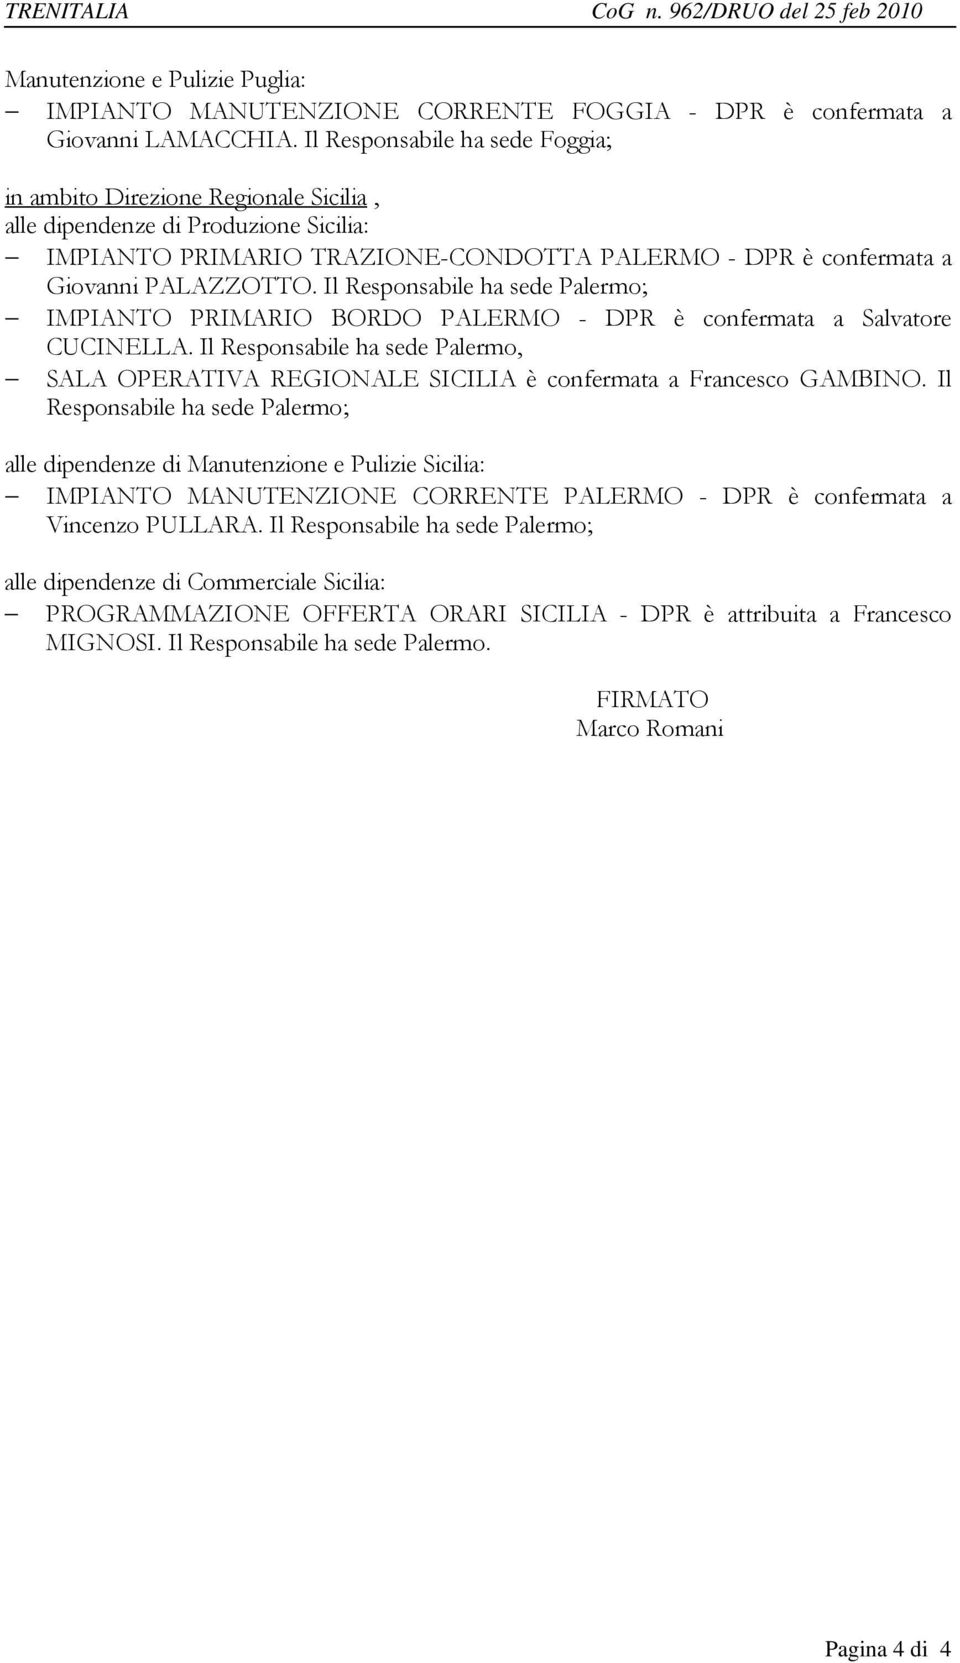 Il Responsabile ha sede Palermo; IMPIANTO PRIMARIO BORDO PALERMO - DPR è confermata a Salvatore CUCINELLA.